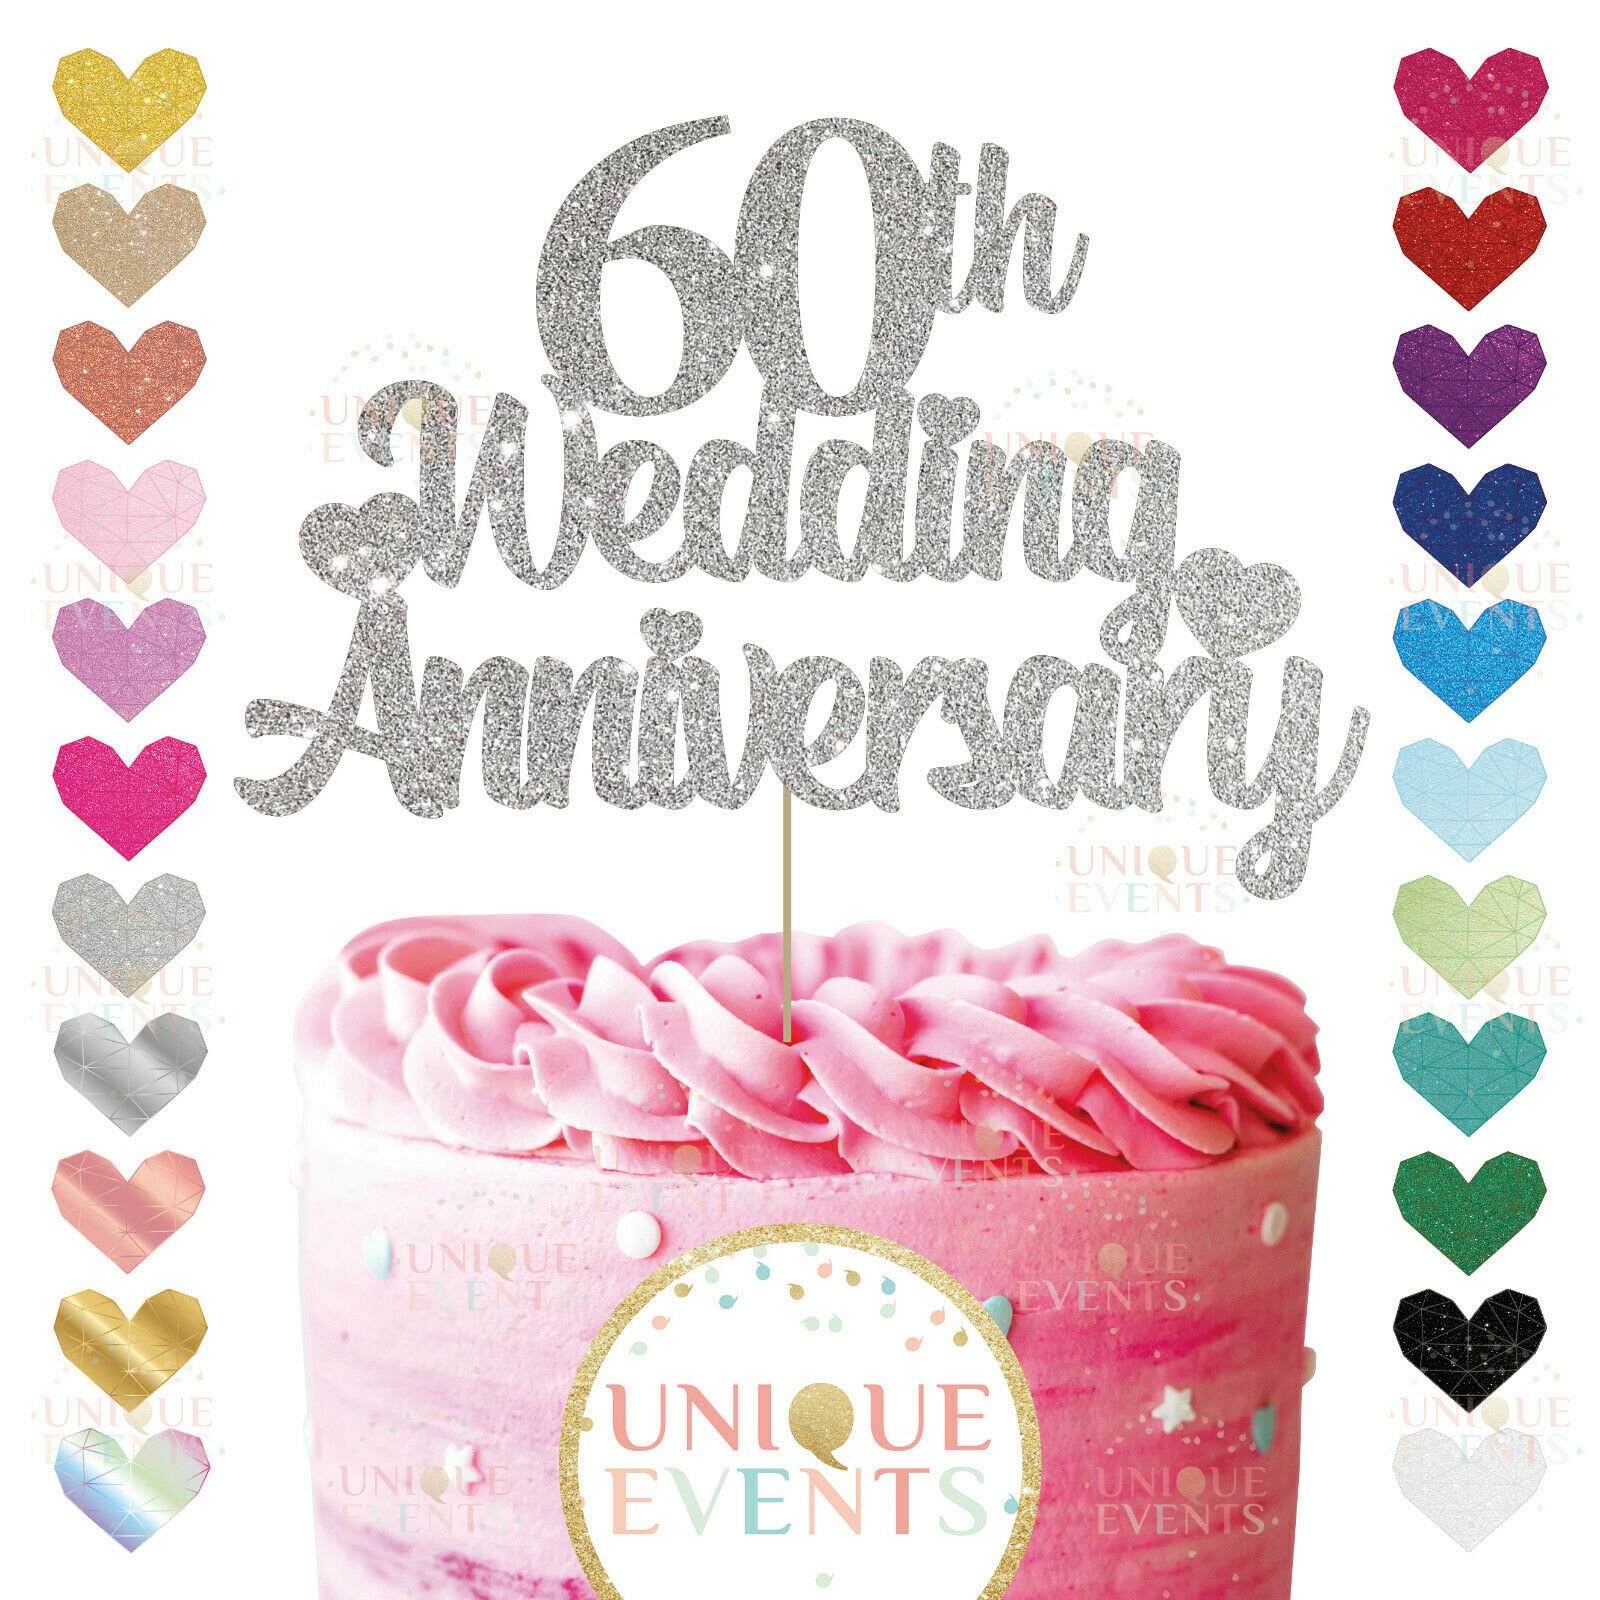 60th Anniversary Cake Topper Diamond Wedding Anniversary - Etsy UK